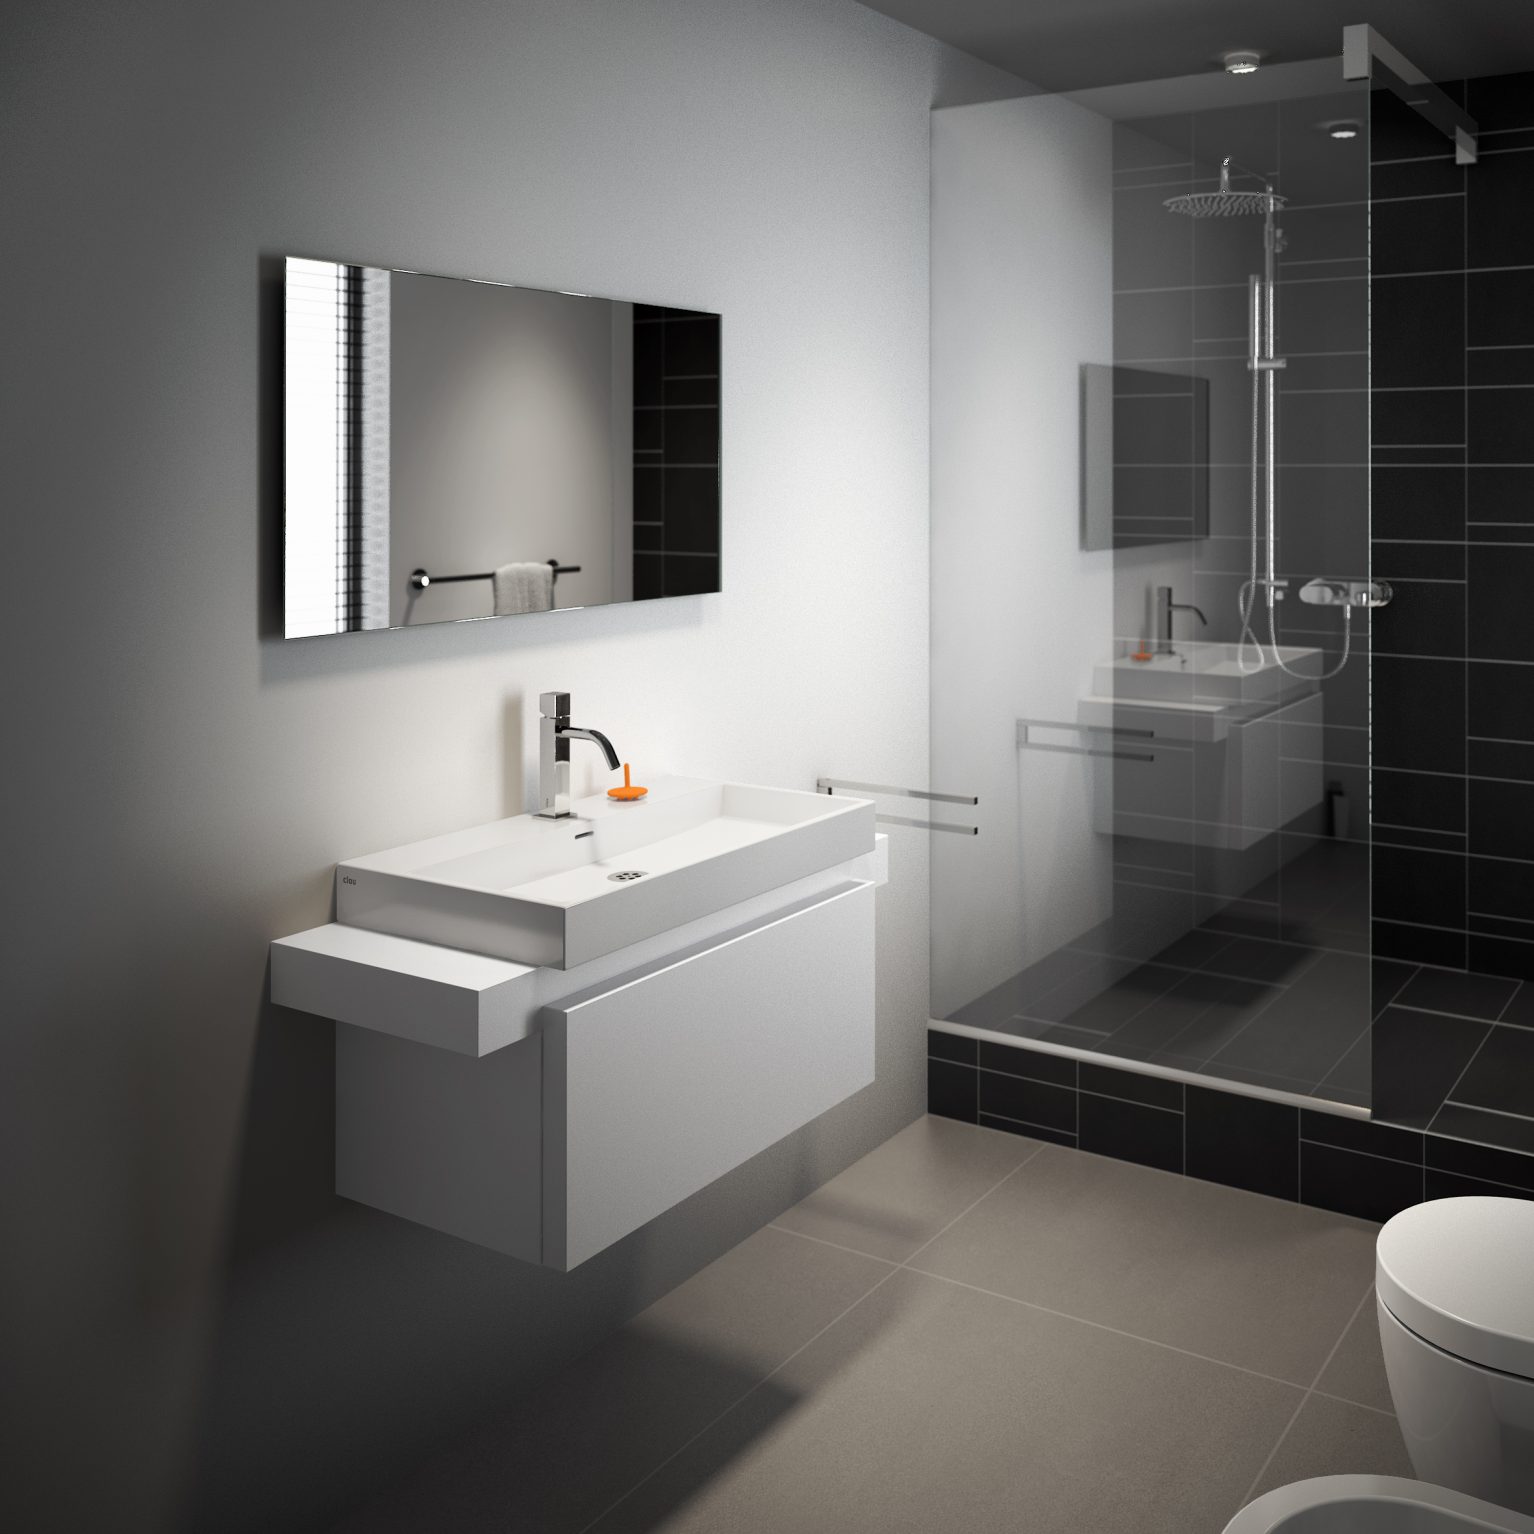 wastafel-meng-kraan-chroom-toilet-badkamer-luxe-sanitair-Xo-type12-clou-CL061401229-vierkant-wasbakje-fontein-kraan-Sp-MatchMe-meubels-ladekast